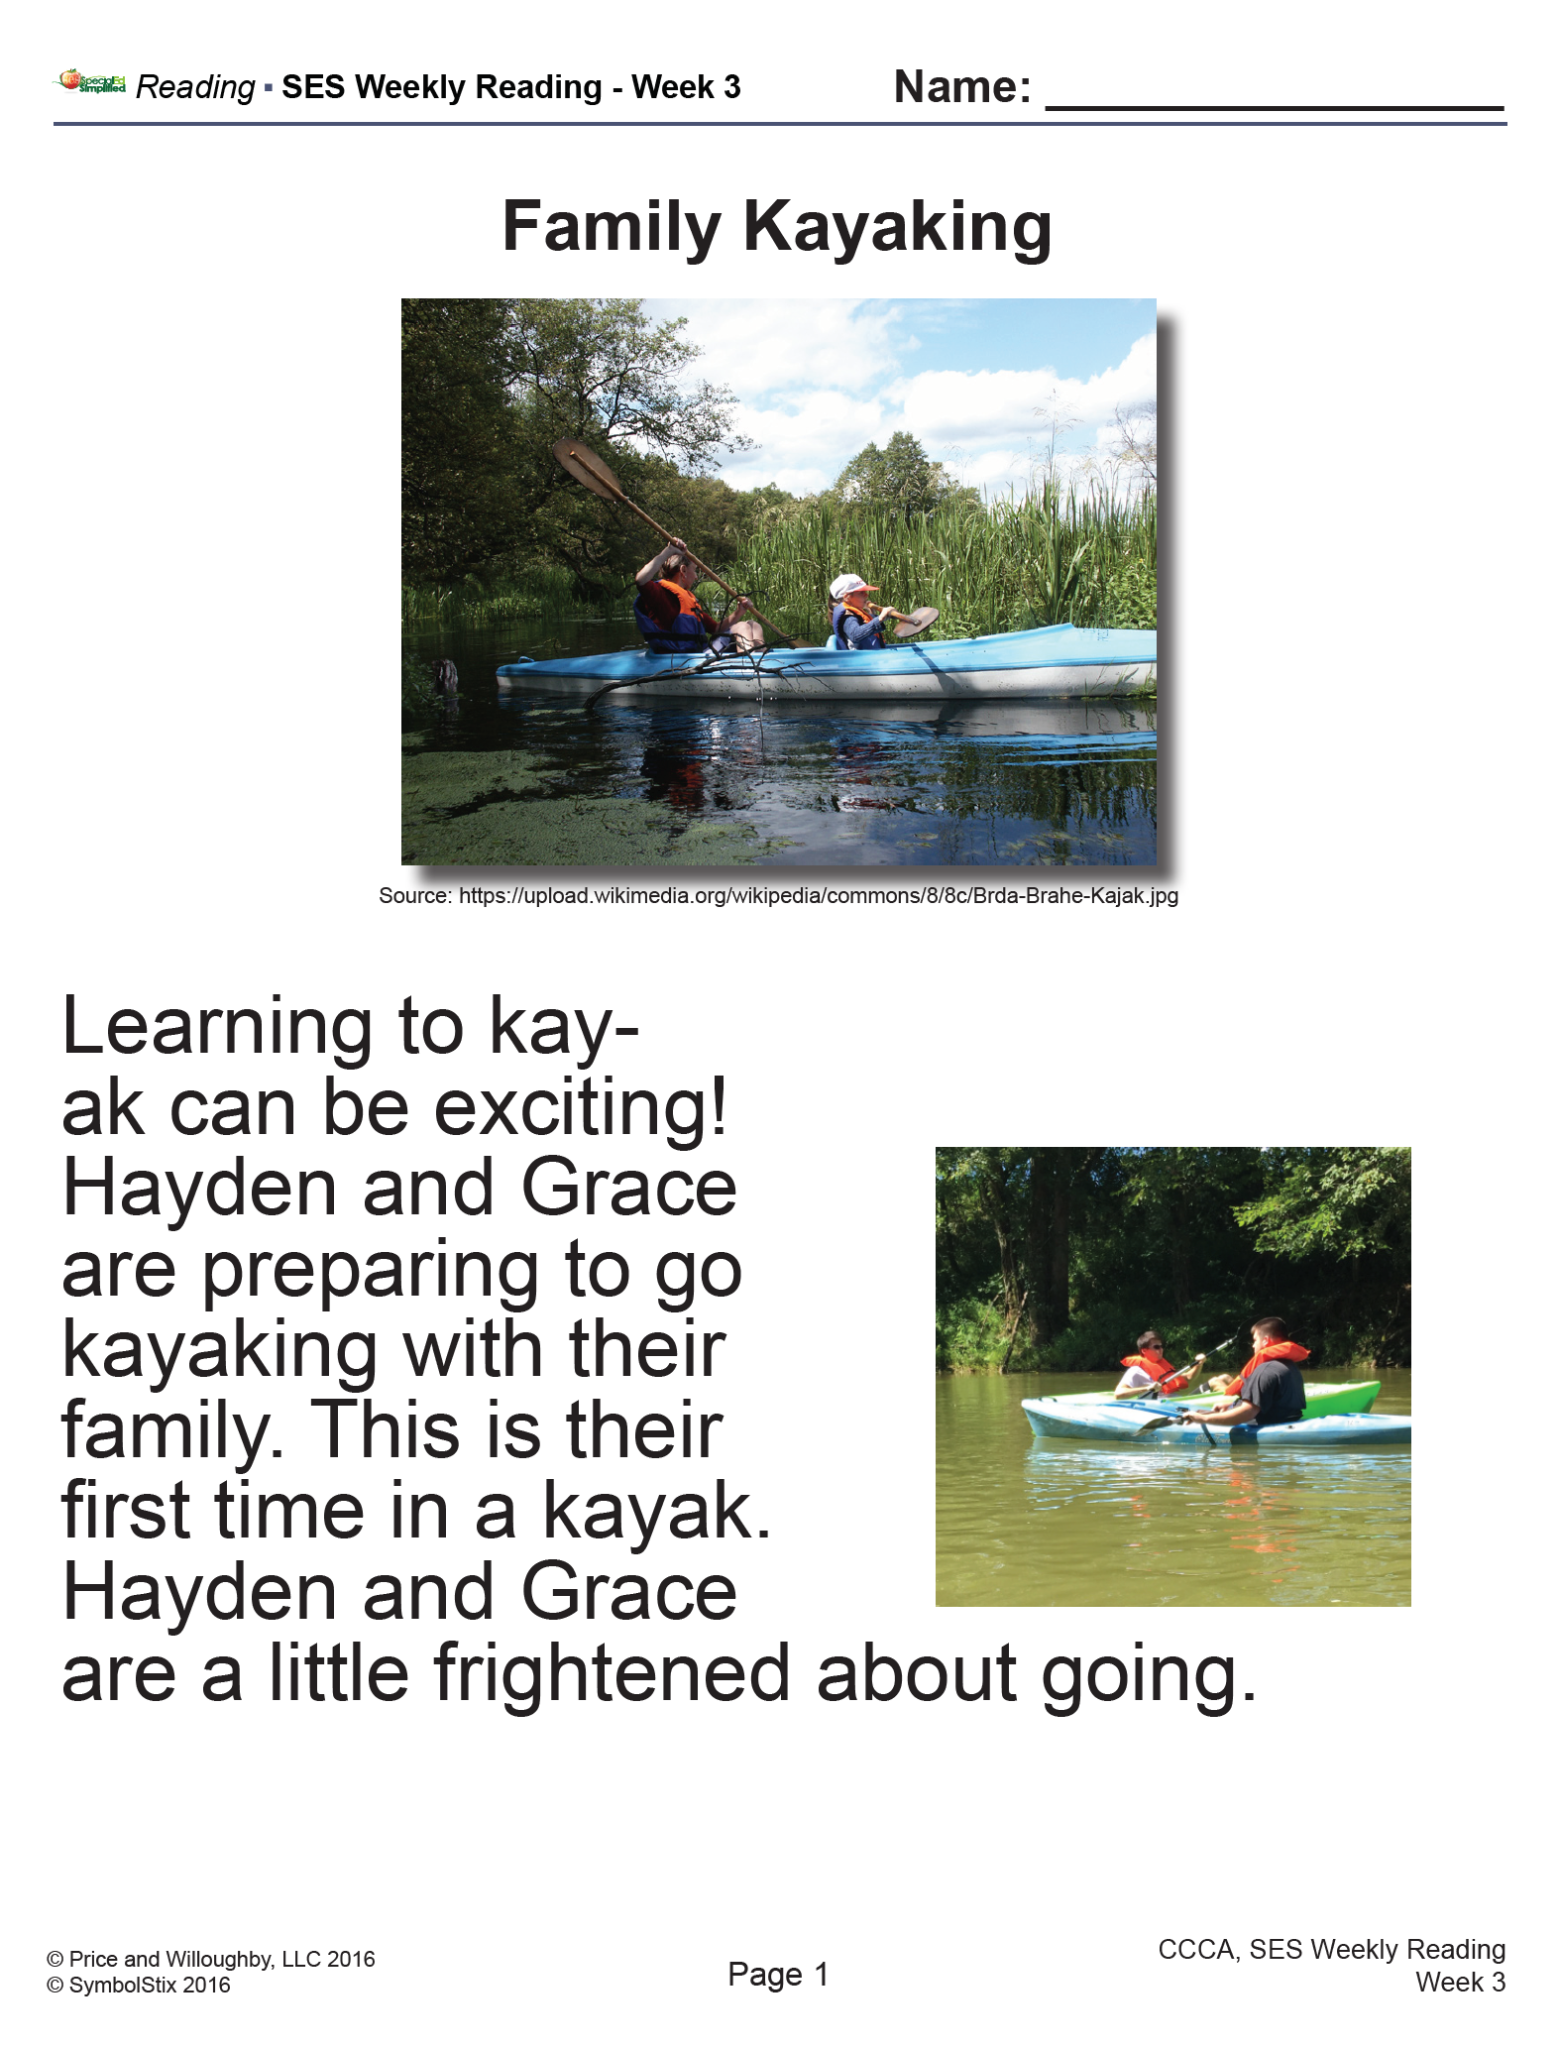 SES Reading- Family Kayaking